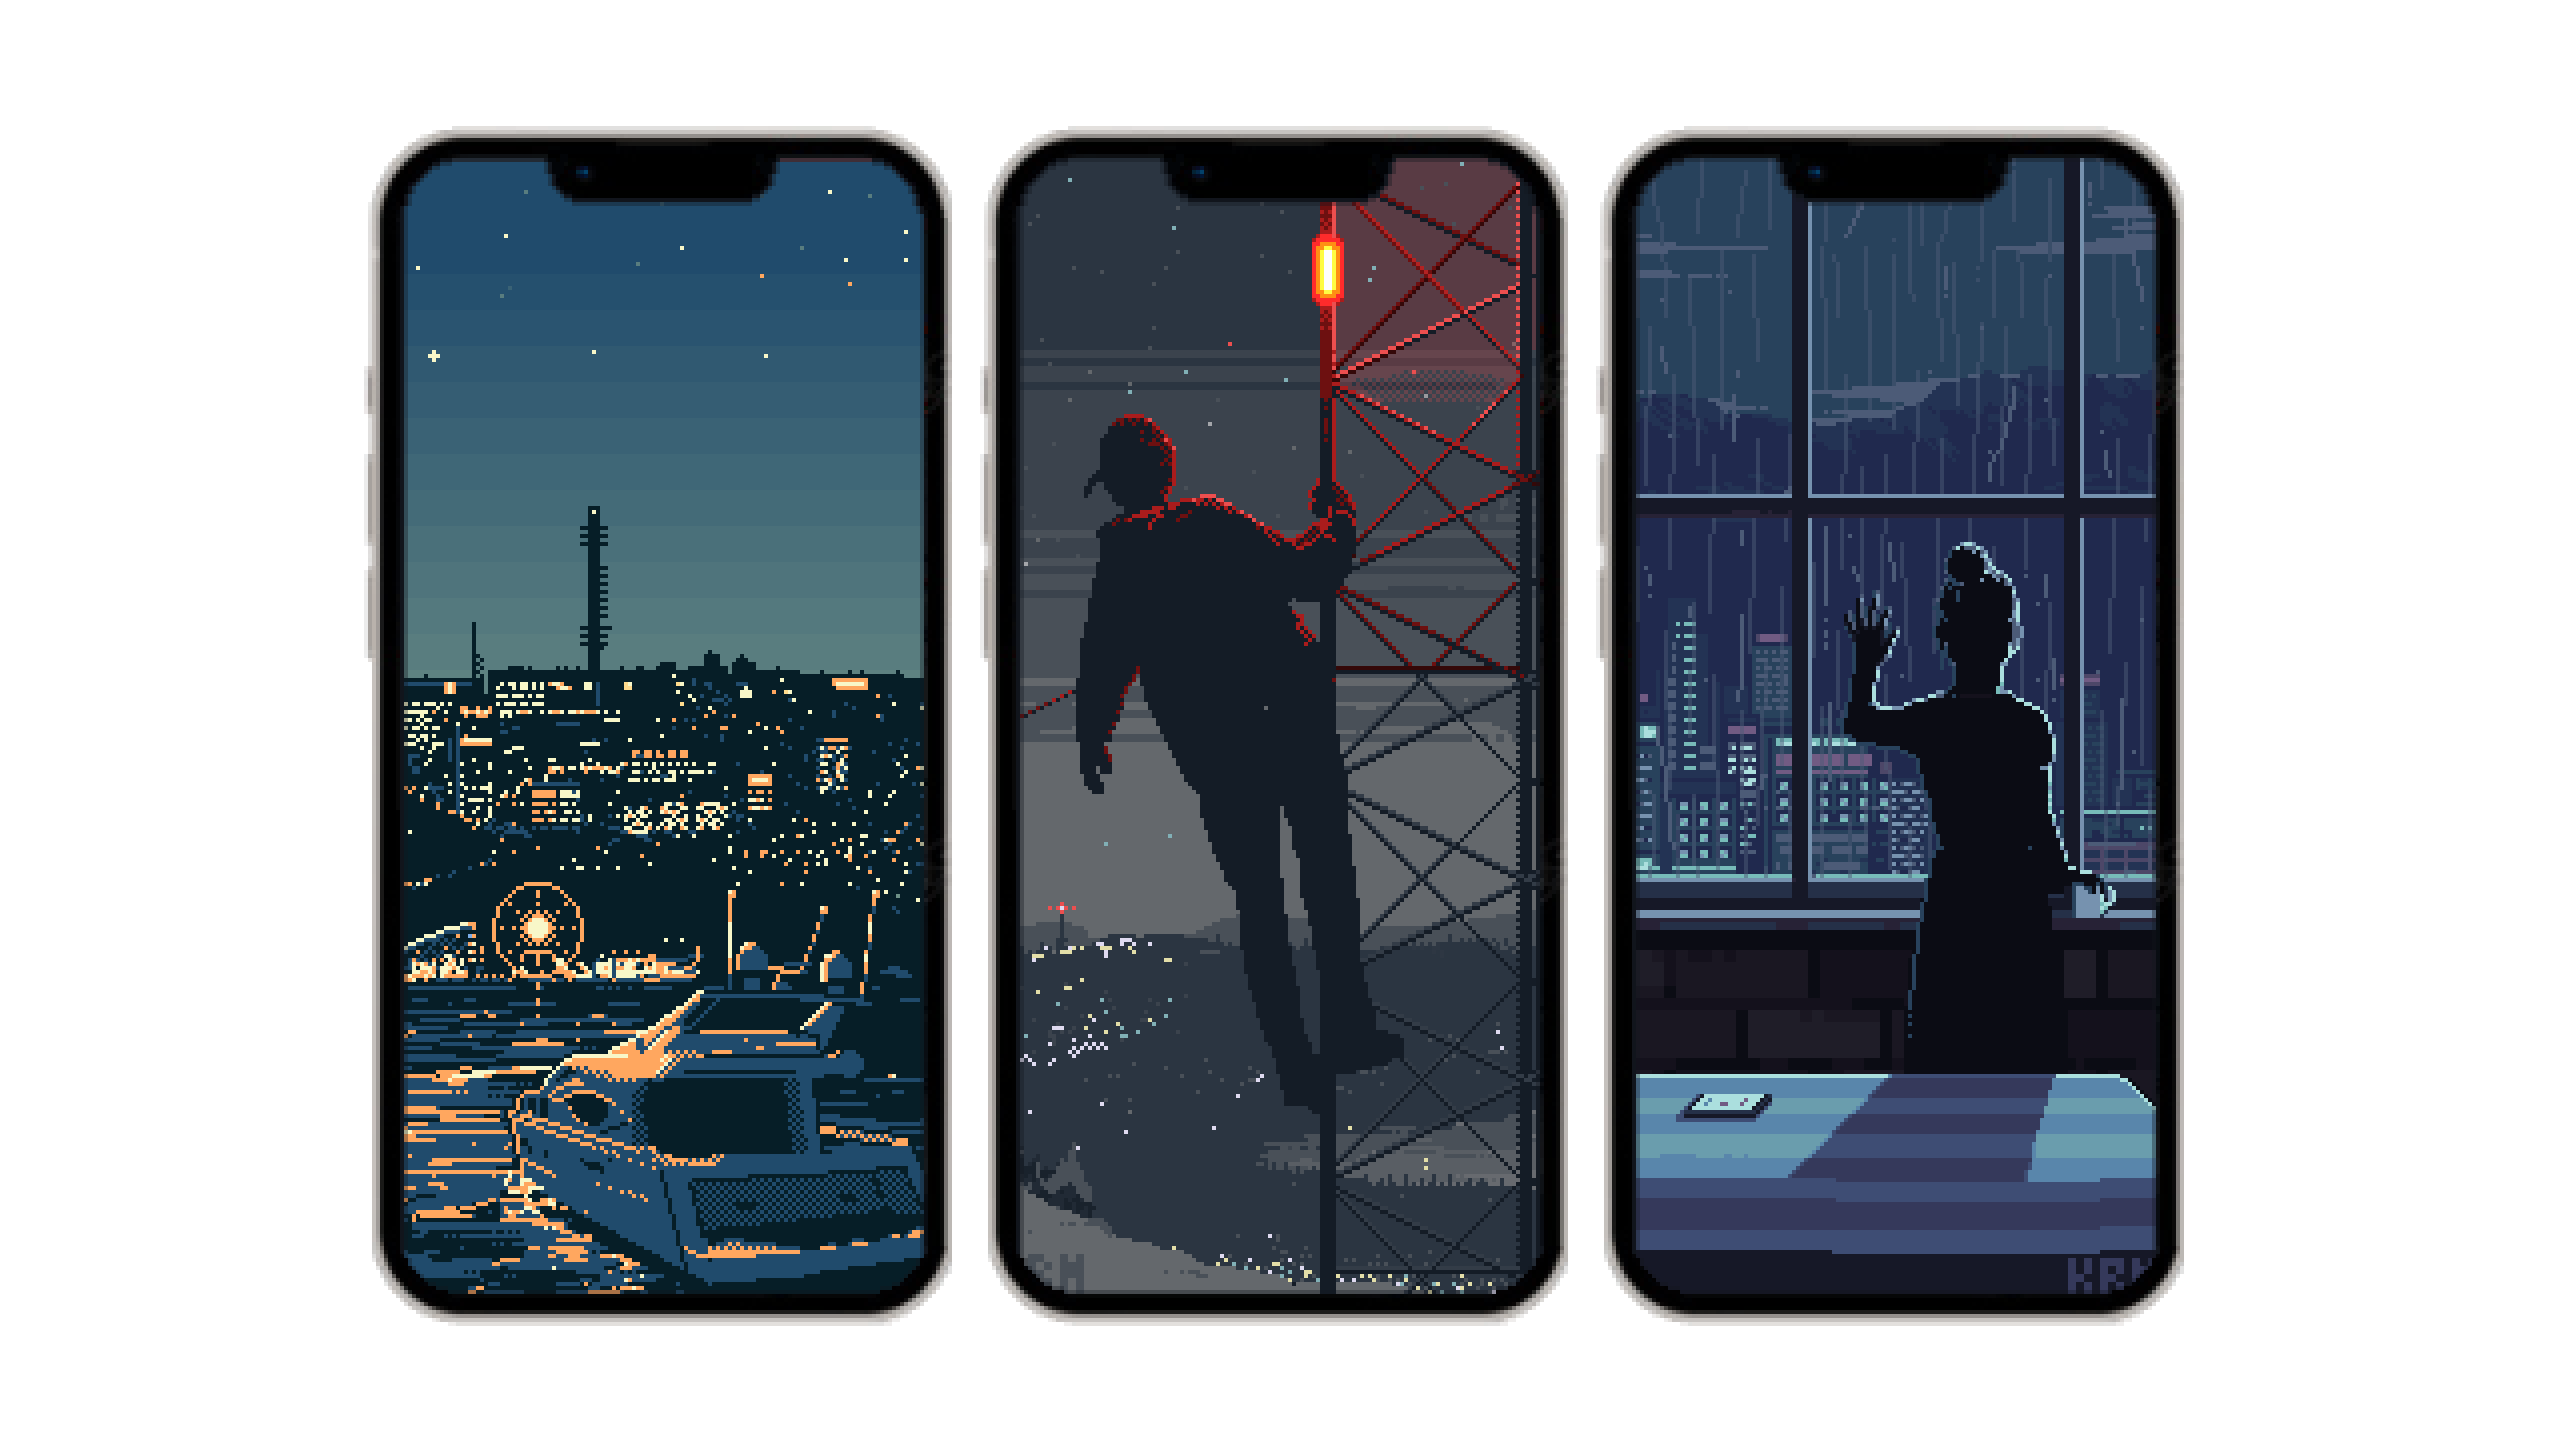 Pixel art phone wallpaper pack 1